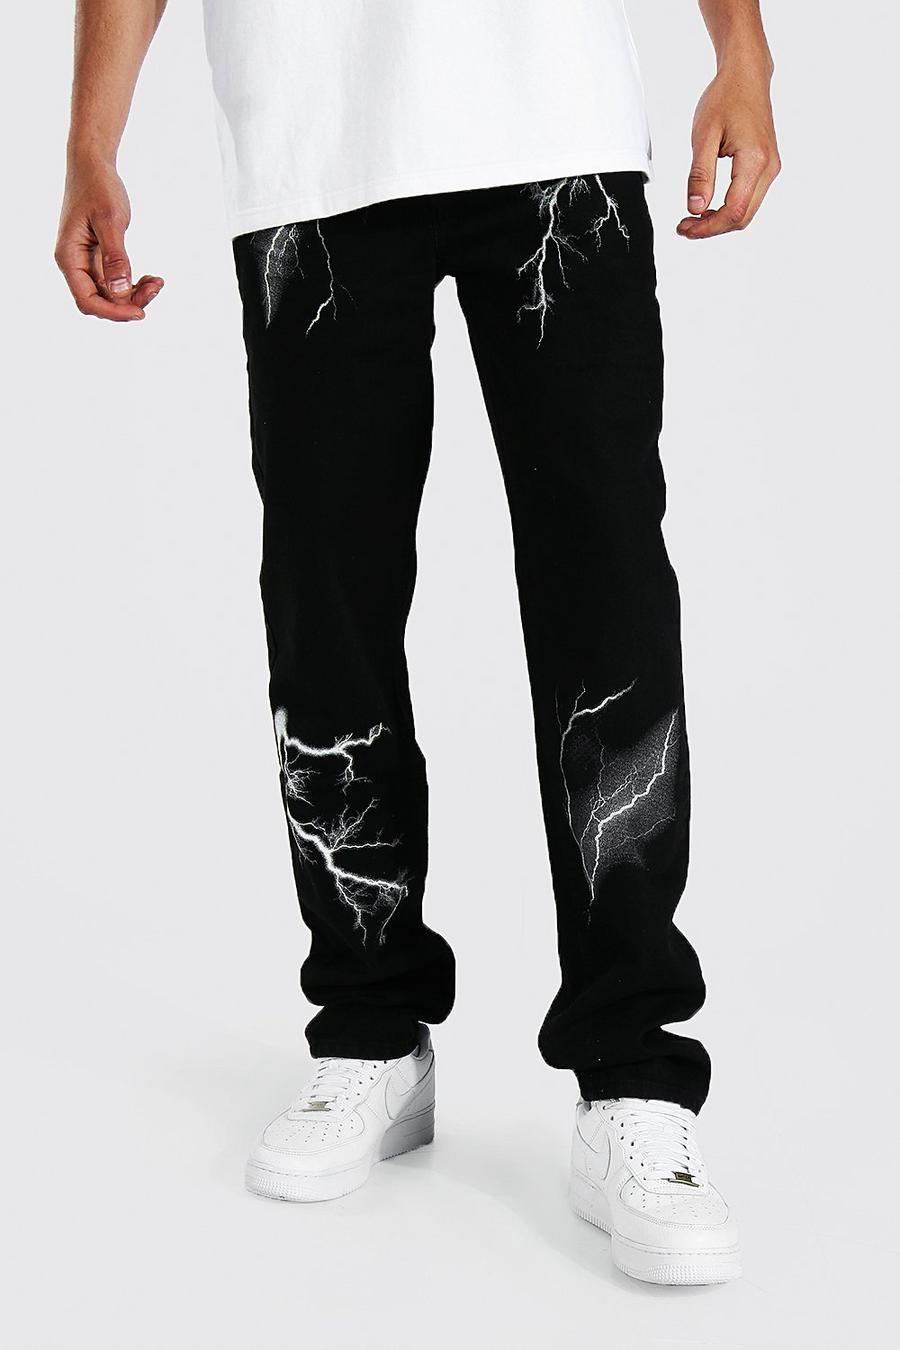 שחור אמיתי ג'ינס בגזרה משוחררת בהדפס ברק לגברים גבוהים